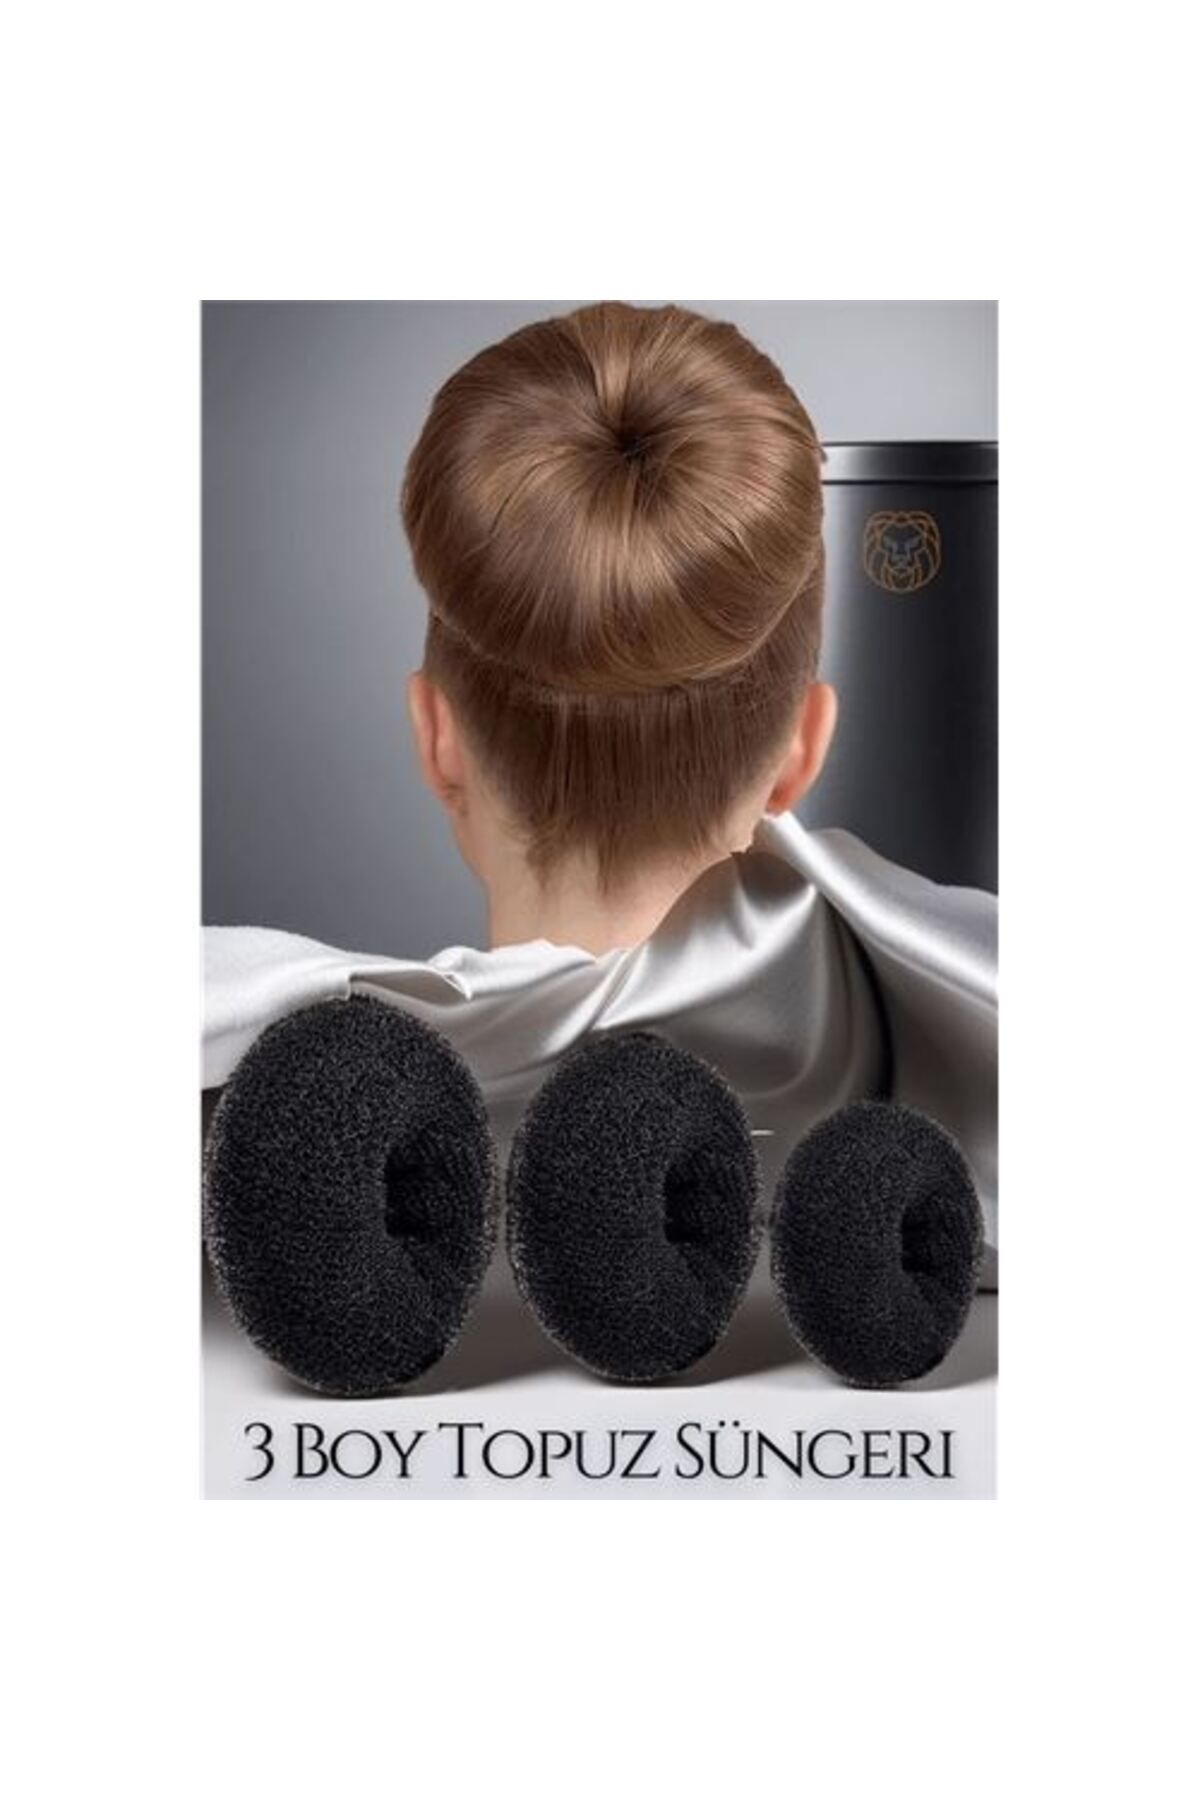 Transformacion Siyah Saç Topuz Süngeri 3 Boy Forero Design 719269